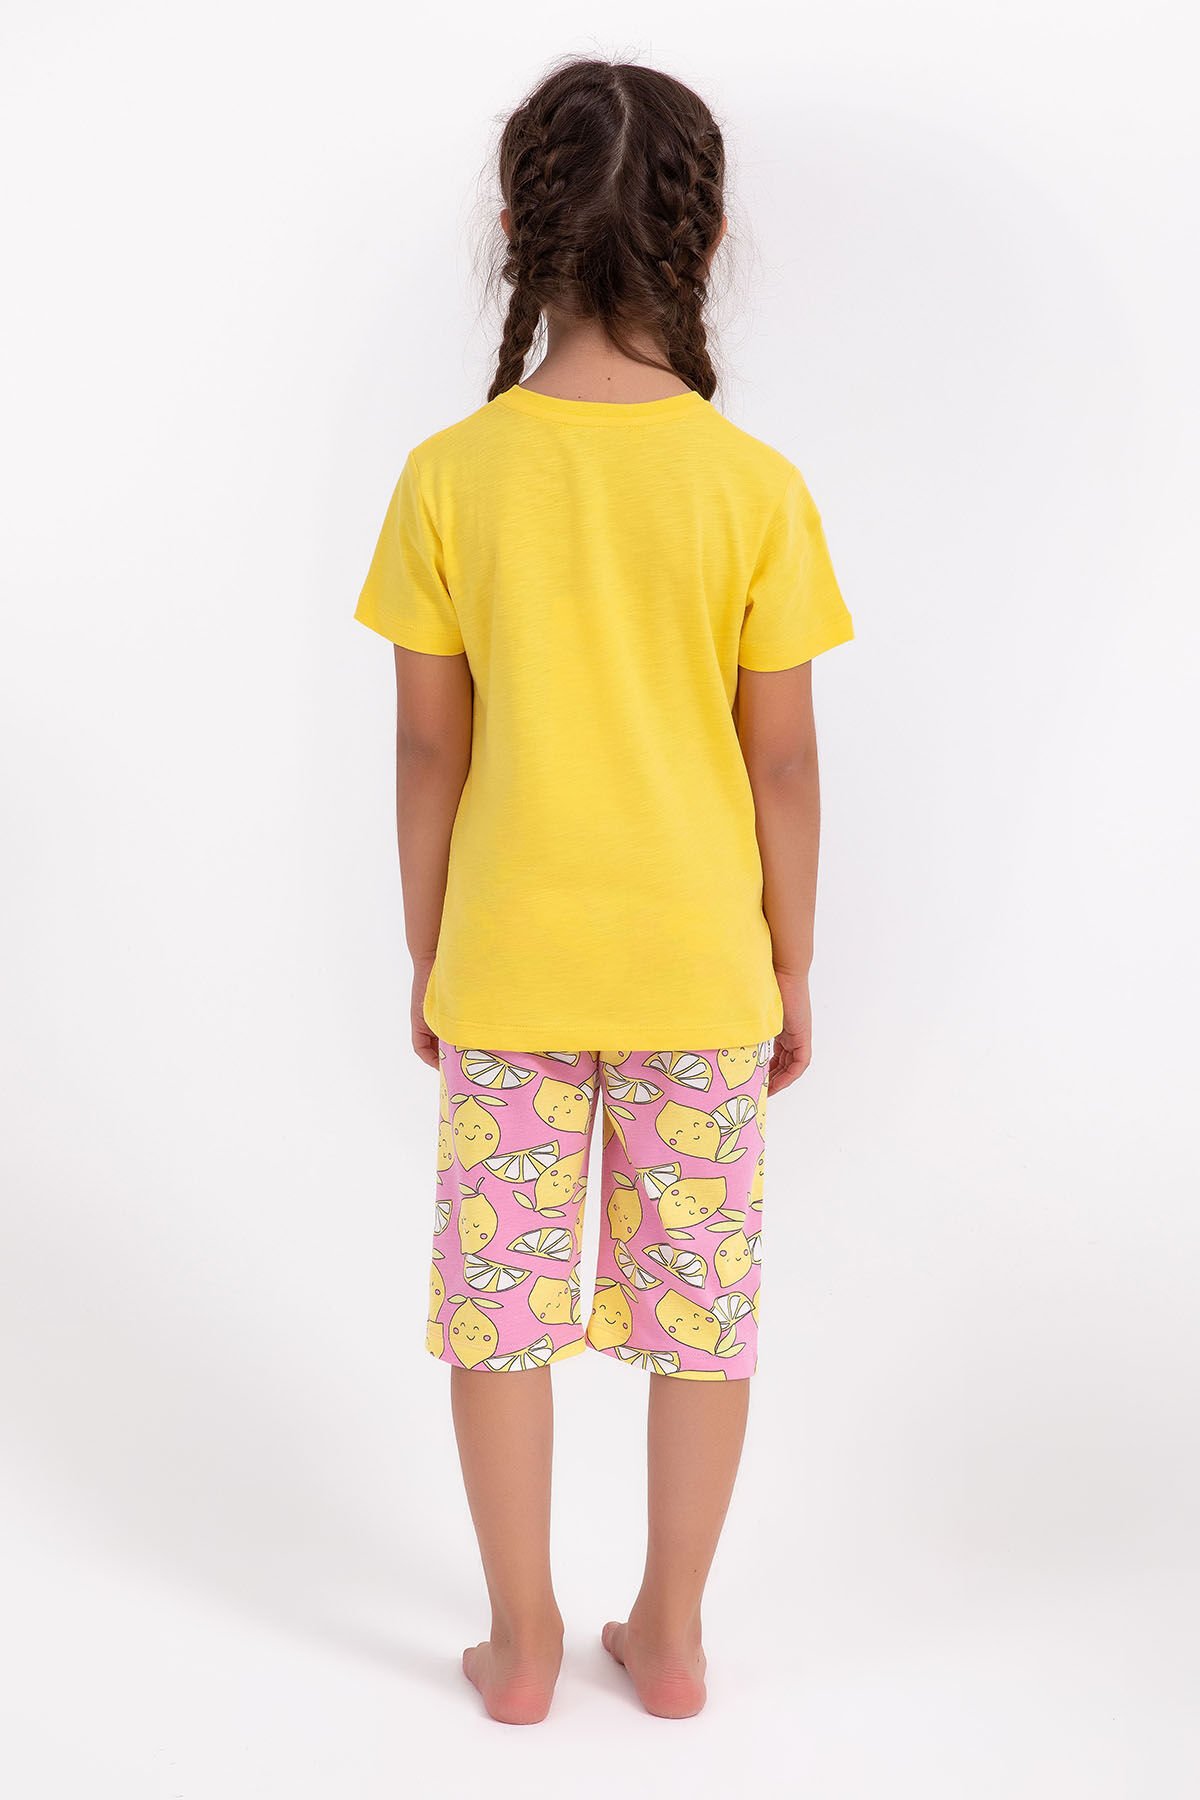 Arnetta Lemon Girl Sarı Kız Çocuk Kapri Takım